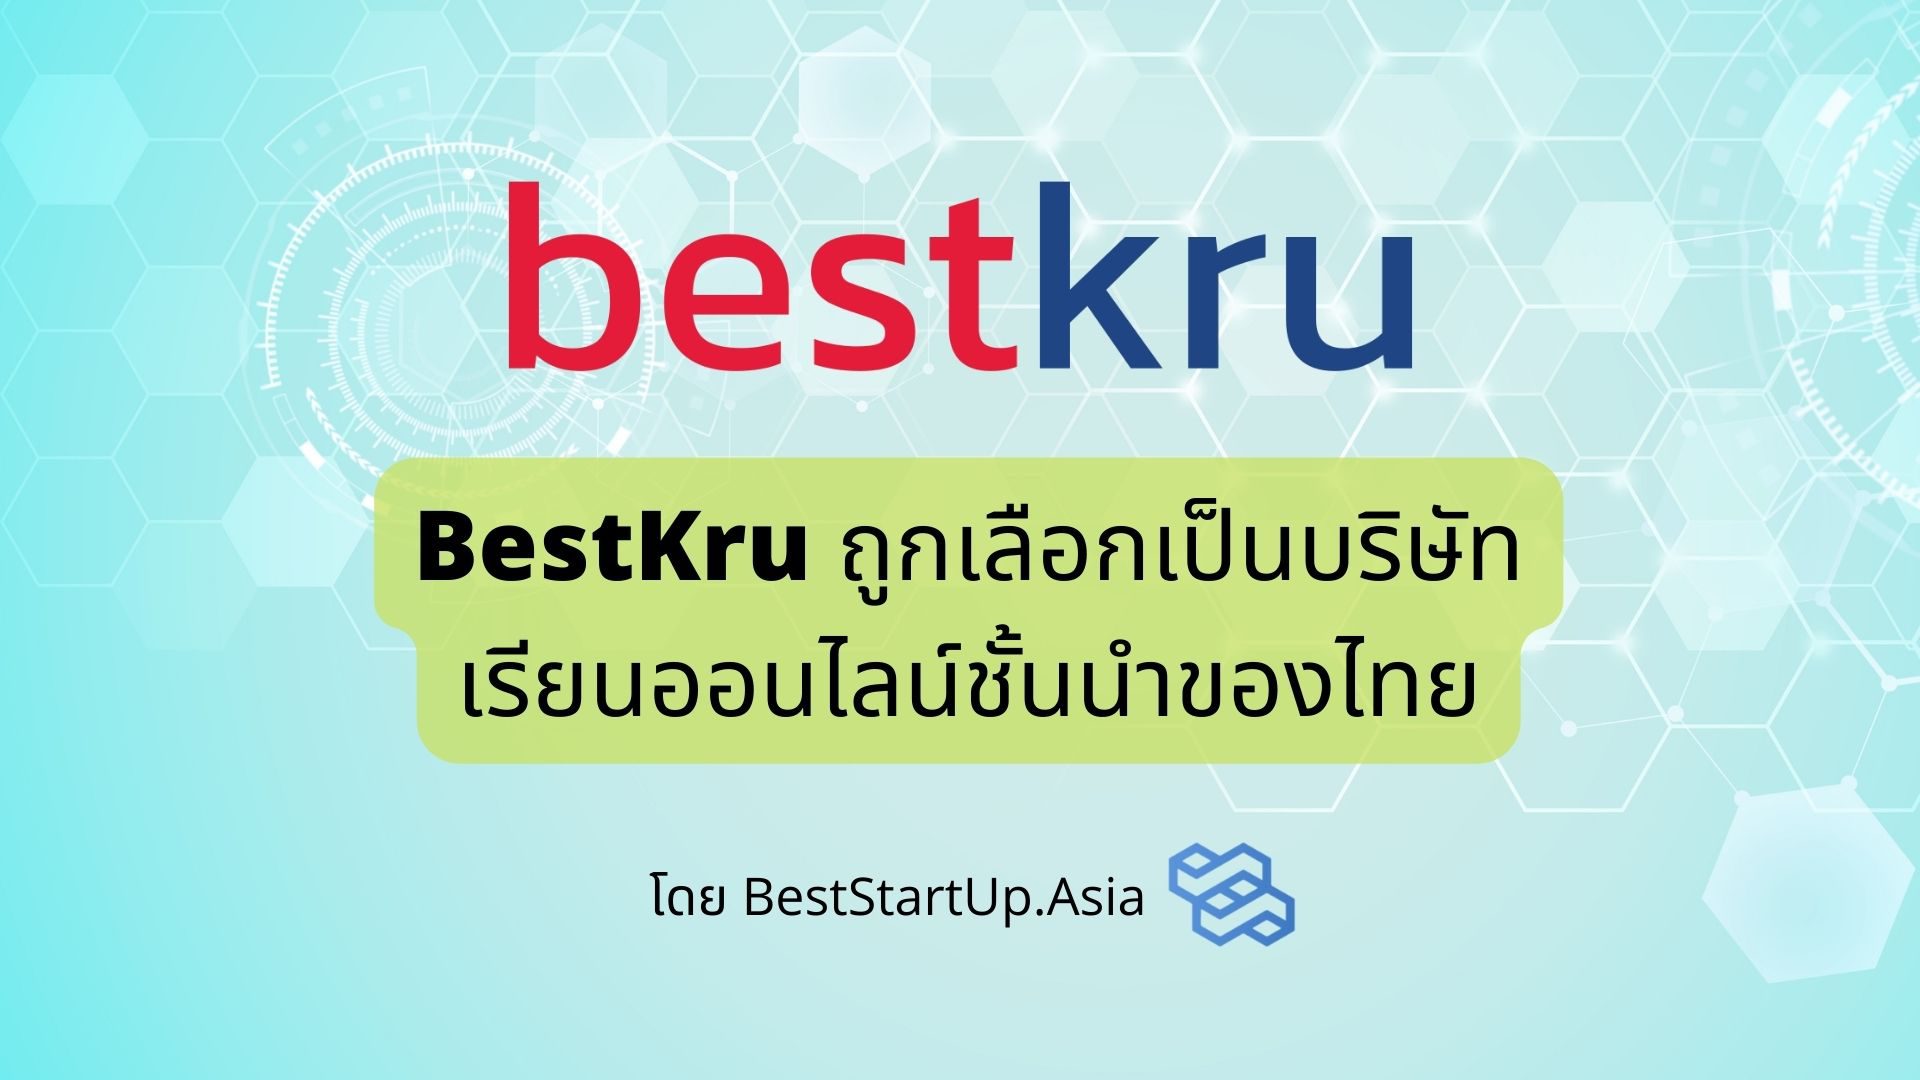 BestKru ถูกเลือกเป็นบริษัทเรียนออนไลน์ชั้นนำของไทย